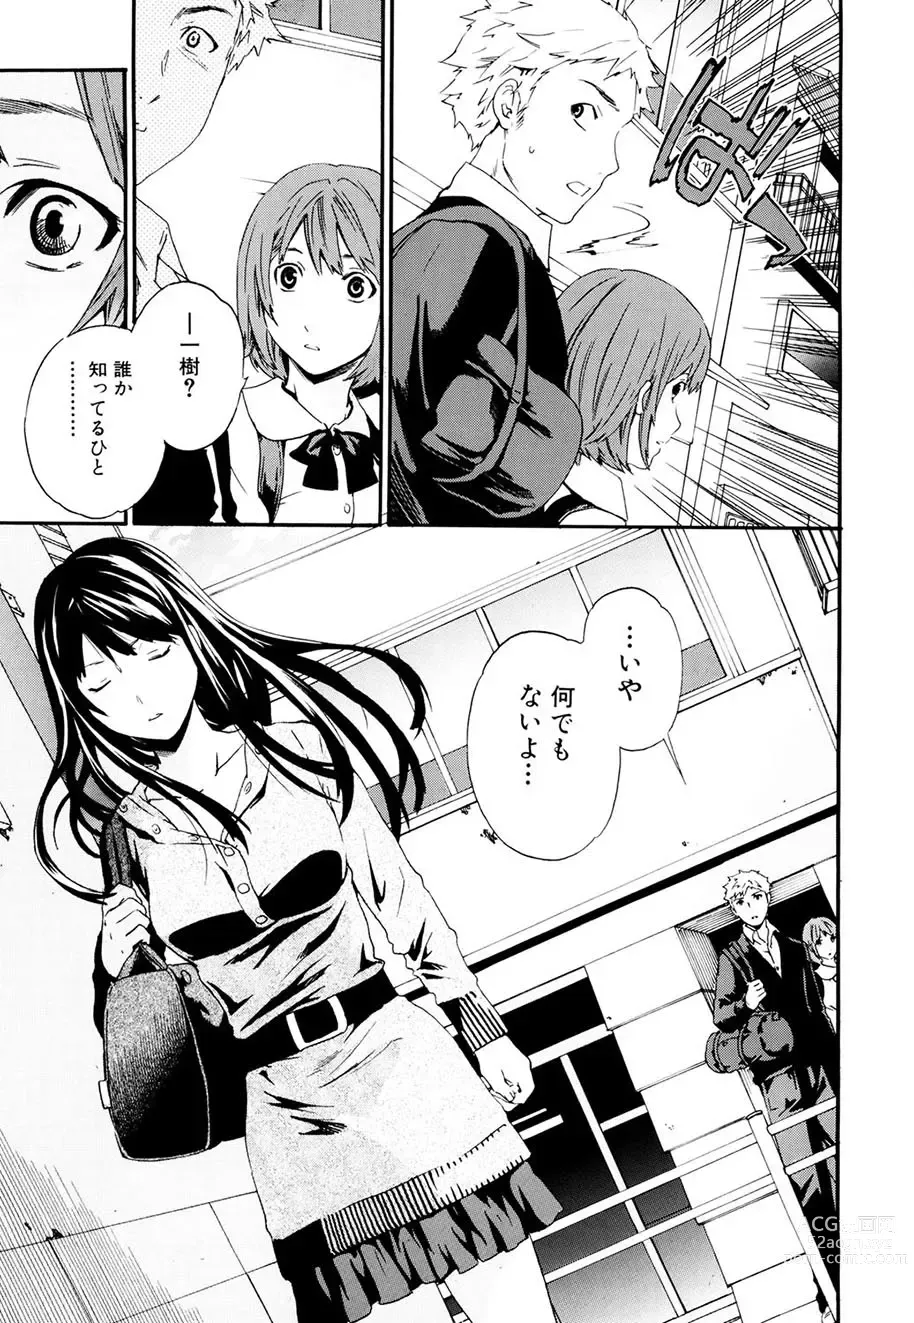 Page 8 of manga Shitai Kara Suru no